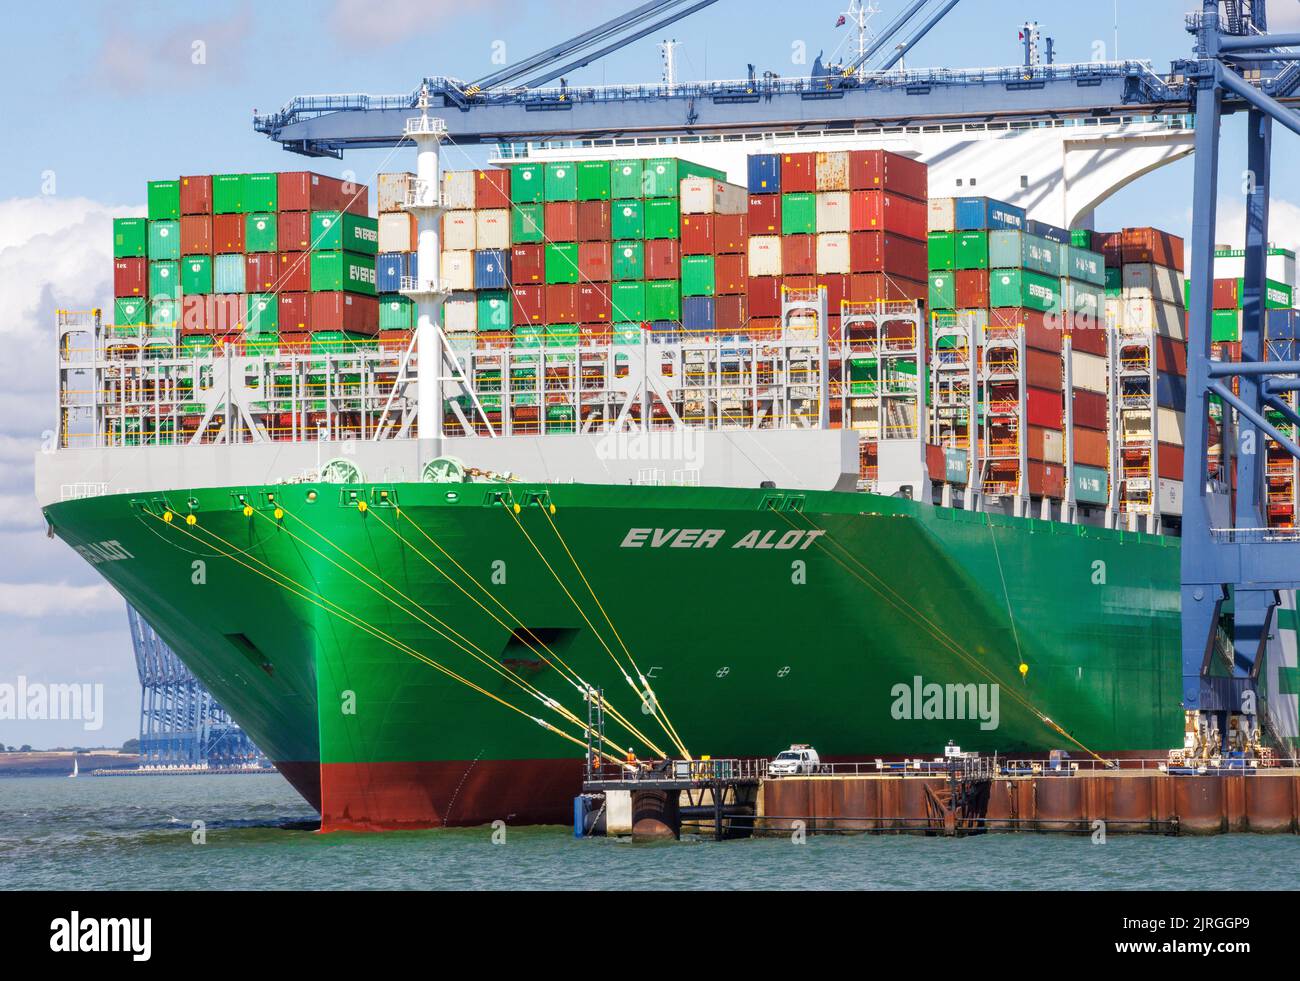 Felixstowe, Regno Unito 24 ago 2022 l'alot è ormeggiato alle banchine di Felixstowe. È la più grande nave container del mondo. I banchieri sono in sciopero su problemi di retribuzione in modo che i contenitori non possono essere scaricati fino a quando il problema non è risolto. Hudong-Zhonghua Shipbuilding Group Co. (Hudong-Zhonghua), una filiale della China state Shipbuilding Corporation (CSSC), ha costruito e consegnato il più grande numero di containers al mondo alla compagnia di navigazione taiwanese Evergreen Marine. La nave alot ha una capacità di carico di 24.004 TEU e misura 400 metri di lunghezza per 61,5 metri di larghezza, con un pescaggio di 17 metri. Il gigante Foto Stock